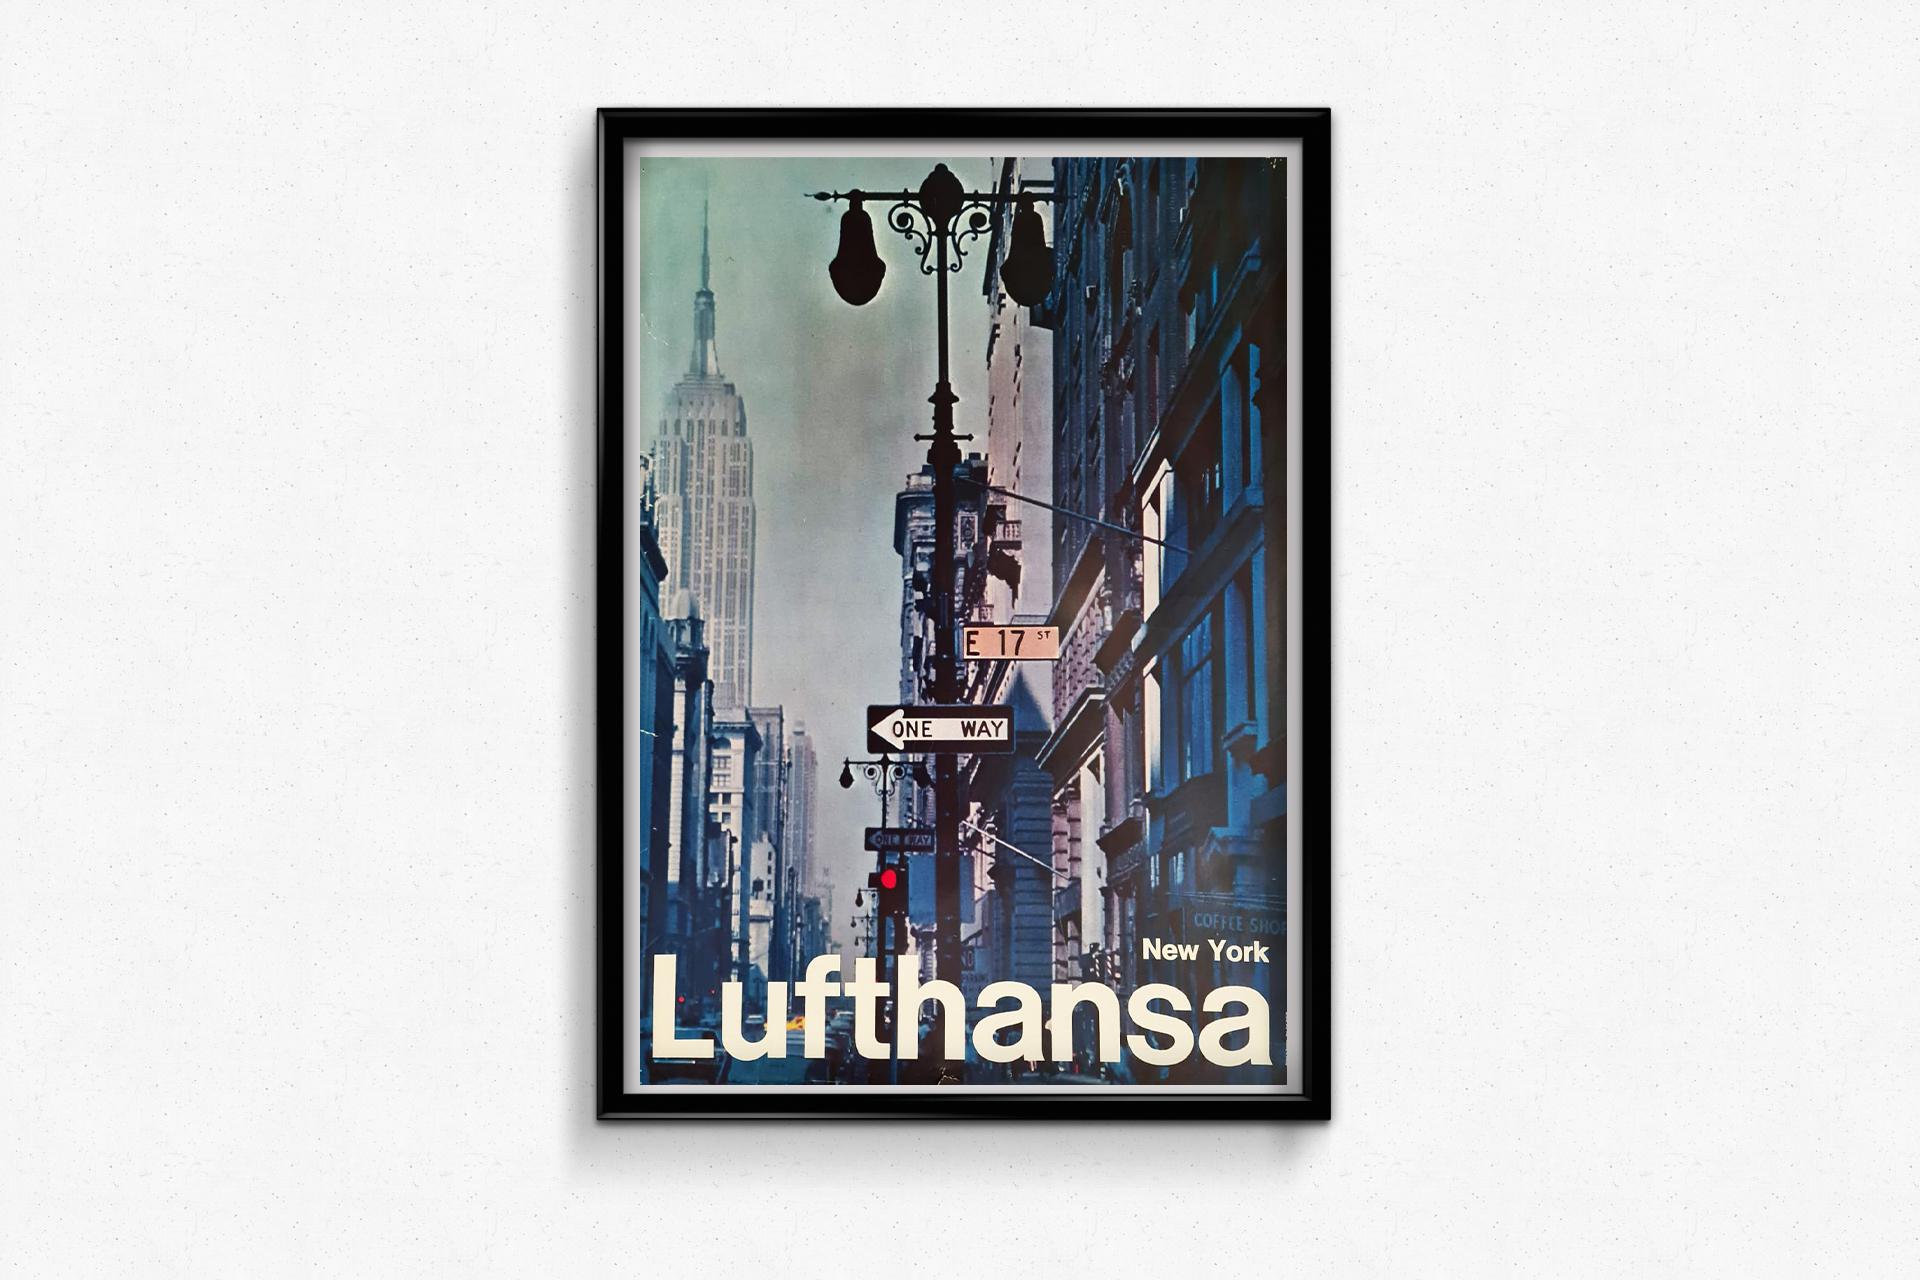 Cette belle affiche a été réalisée en 1972, pour Lufthansa, une compagnie aérienne privée d'origine allemande.

C'est l'une des plus anciennes compagnies aériennes. Elle possède l'une des plus grandes flottes d'avions et est également la première